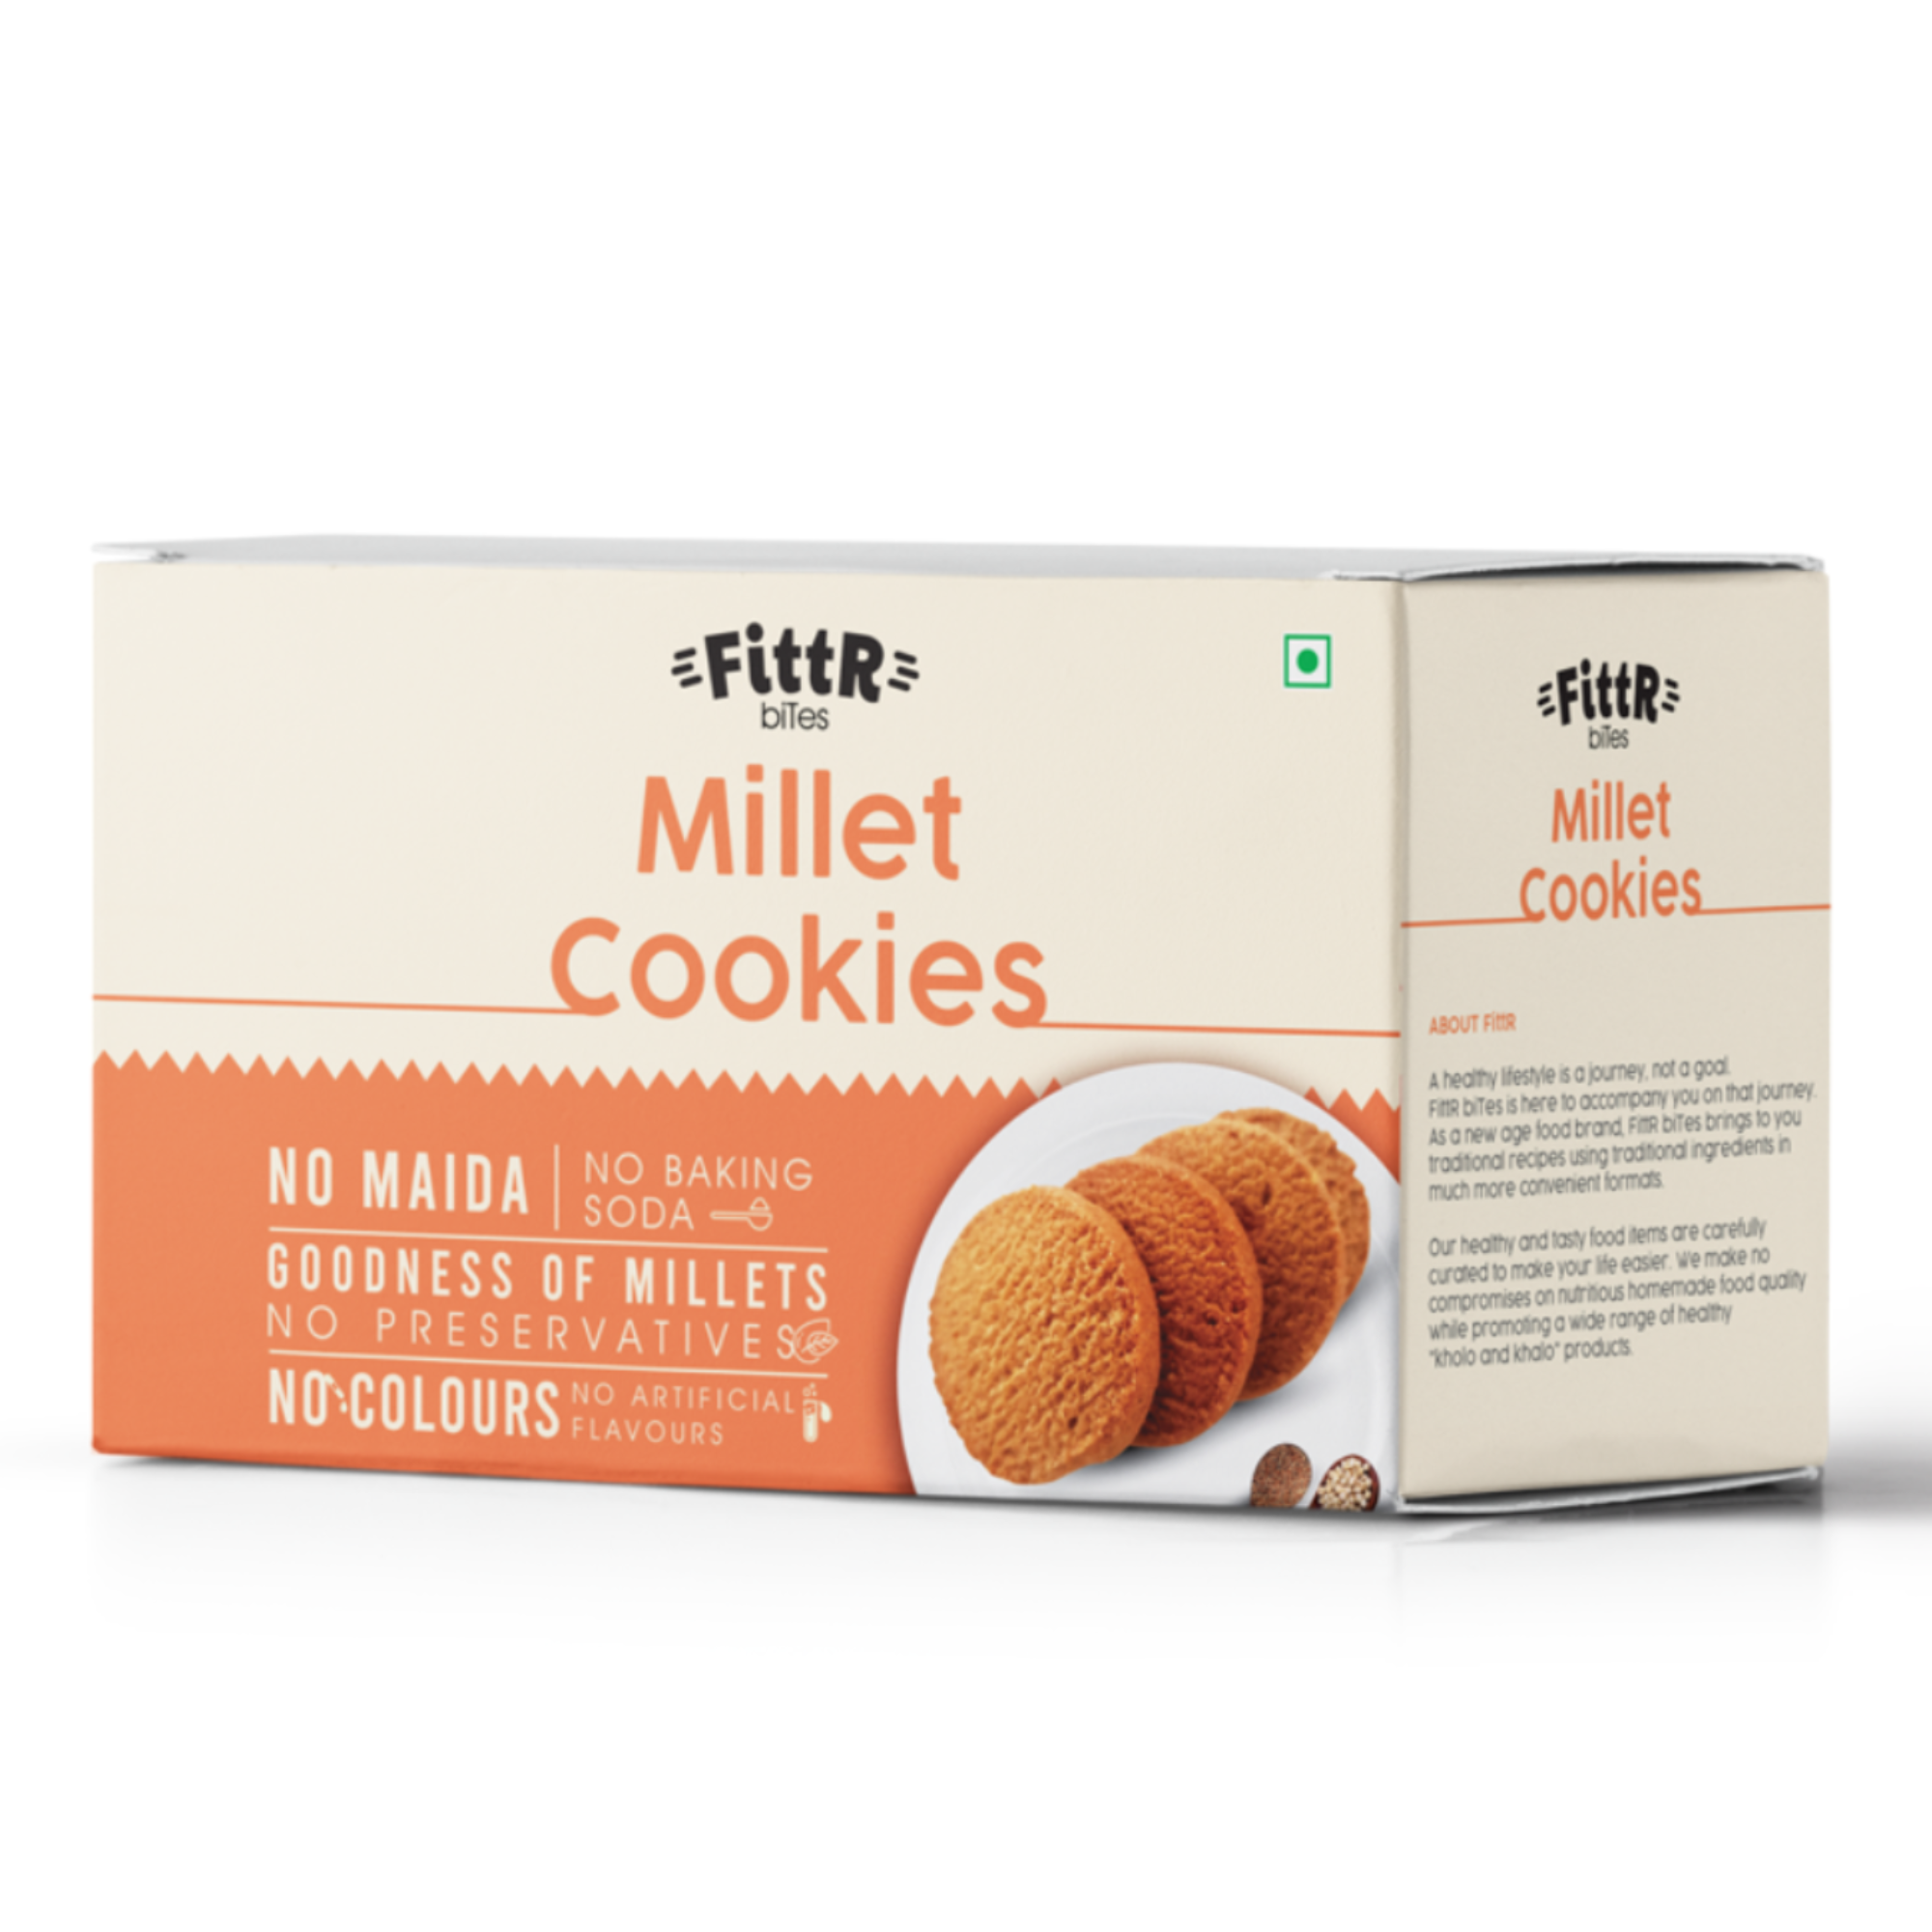 Combo pack - 2 packs Ragi cookies and 2 packs Multi Millet cookies